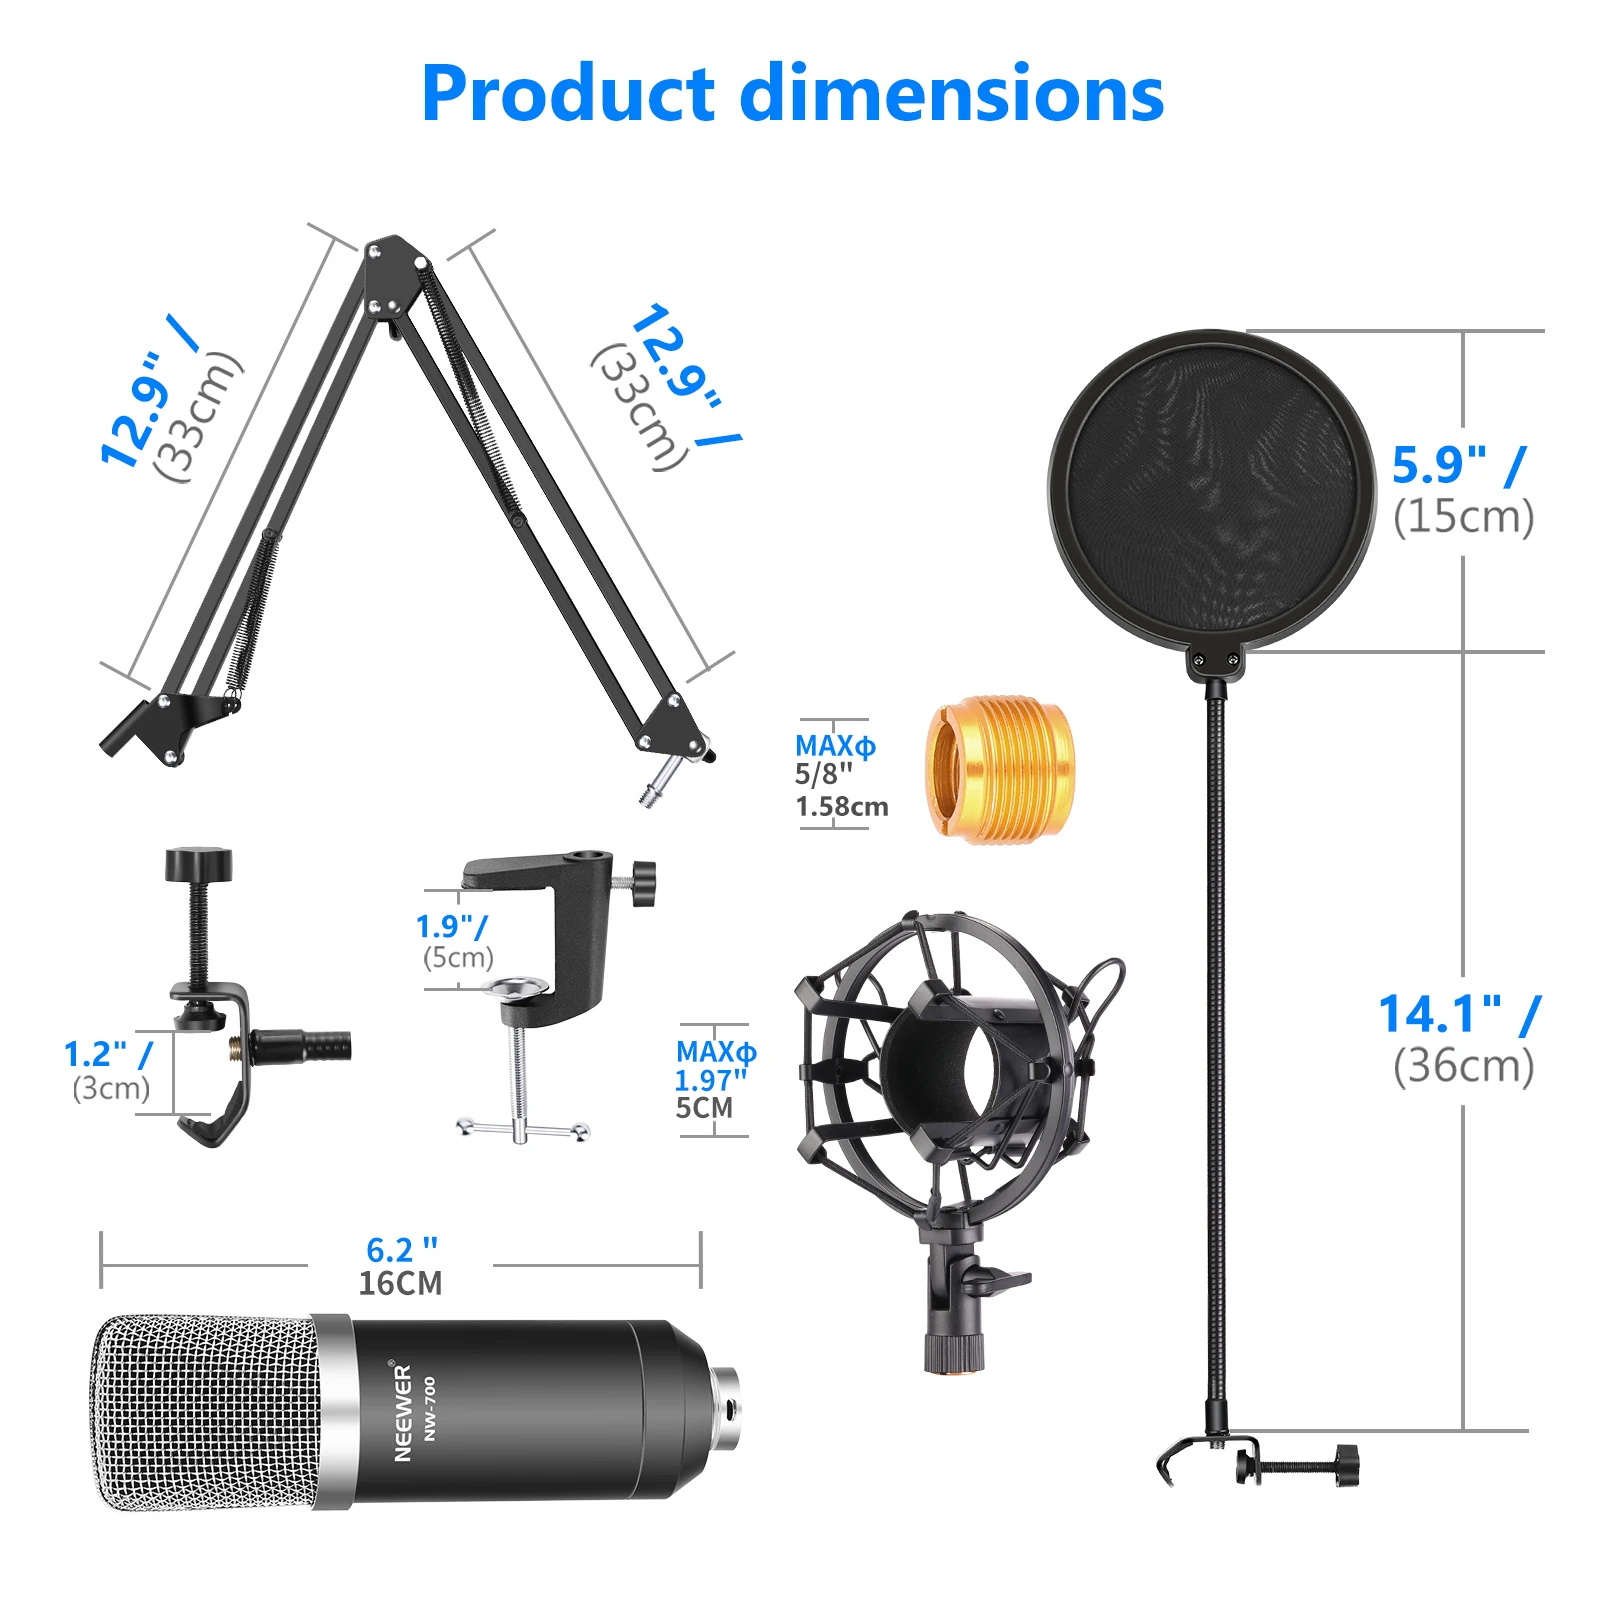 마이크 Neewer NW700 Professional Condenser Microphone Scissor Arm Stand+XLR 케이블+장착 클램프 팝 필터 48V Phantom 전원 공급 장치